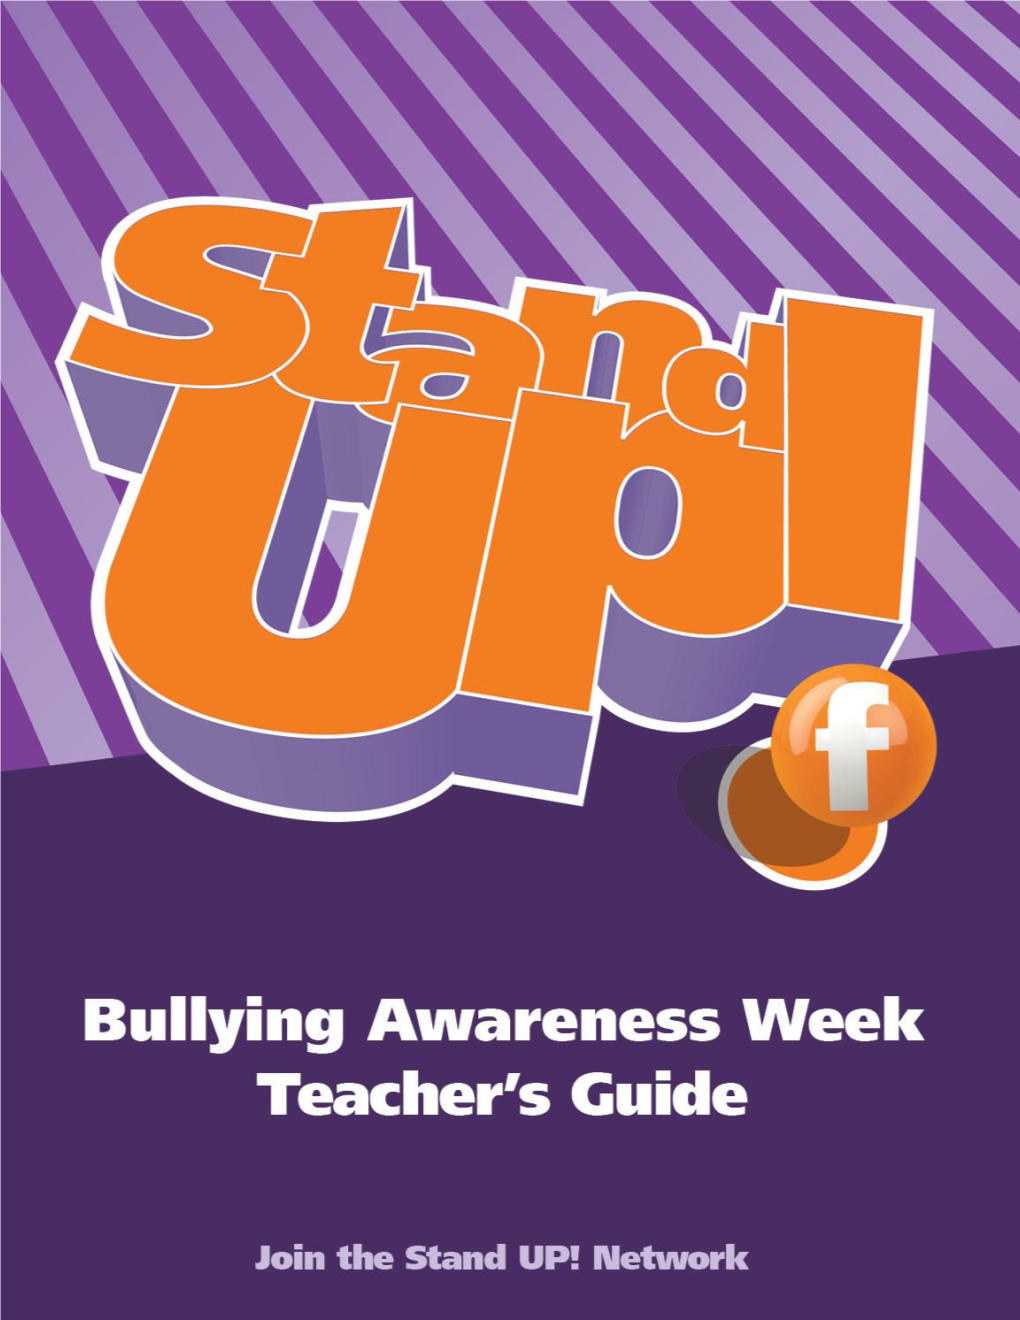 Family Channel's Bullying Awareness Week Teacher's Guide